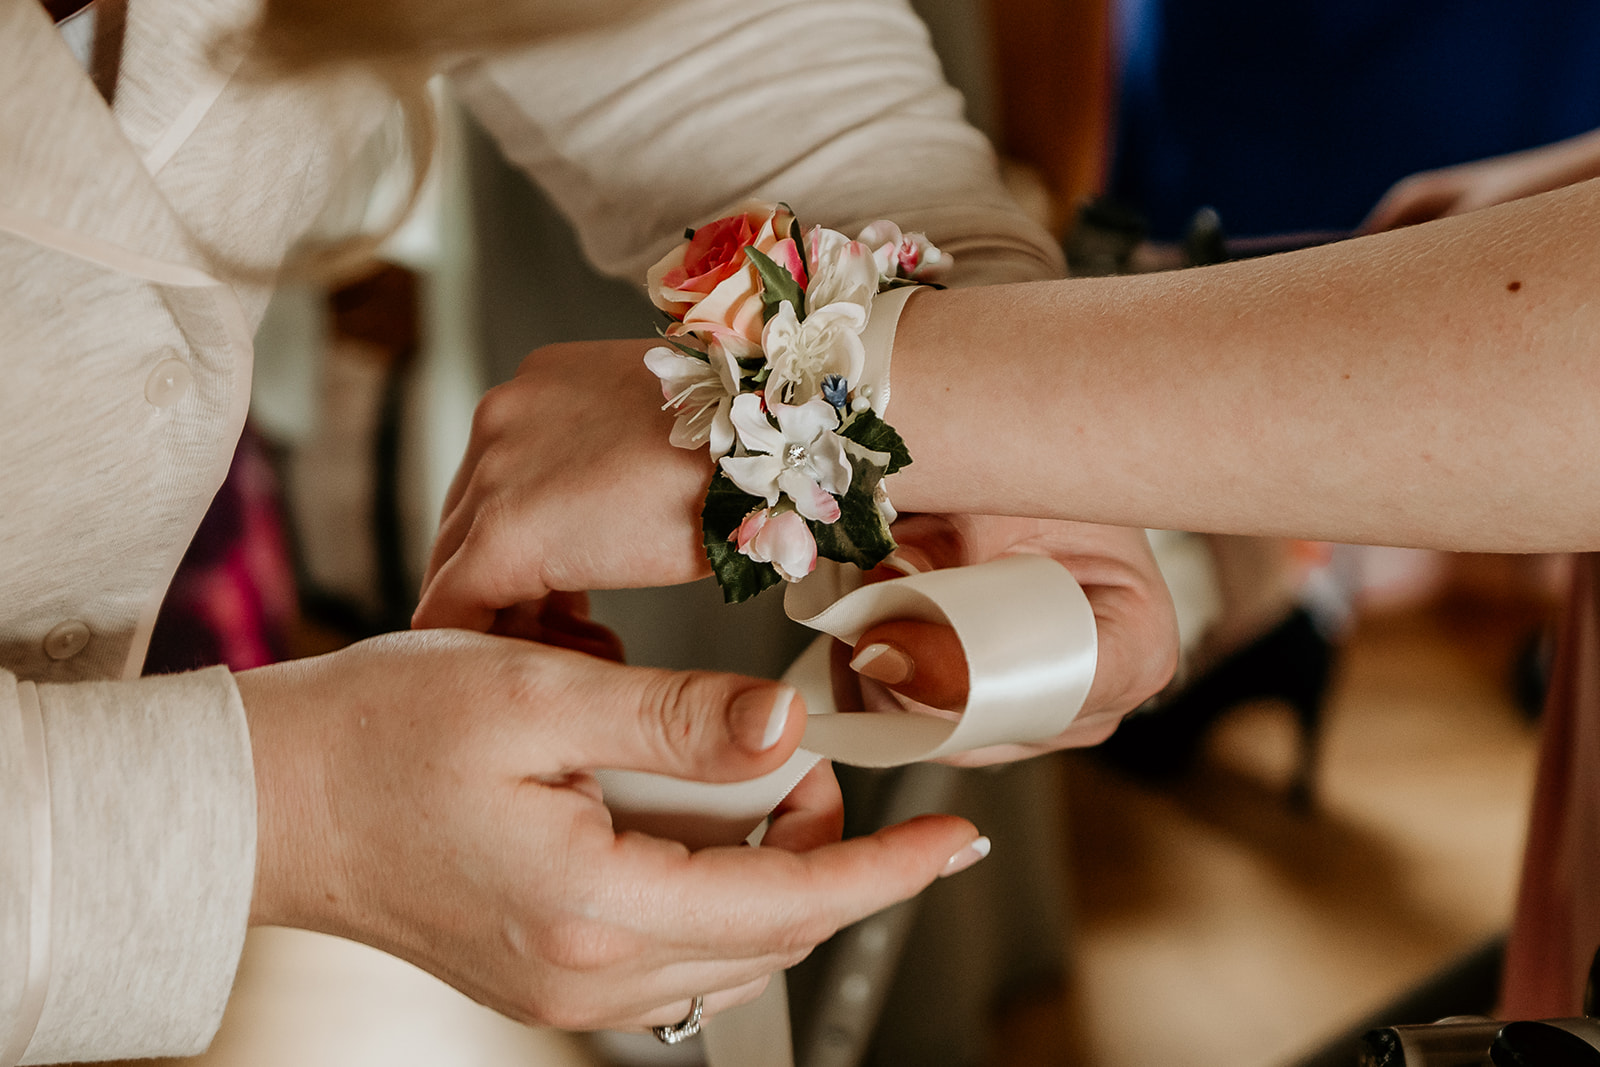 wrist flowers on bridesmaid